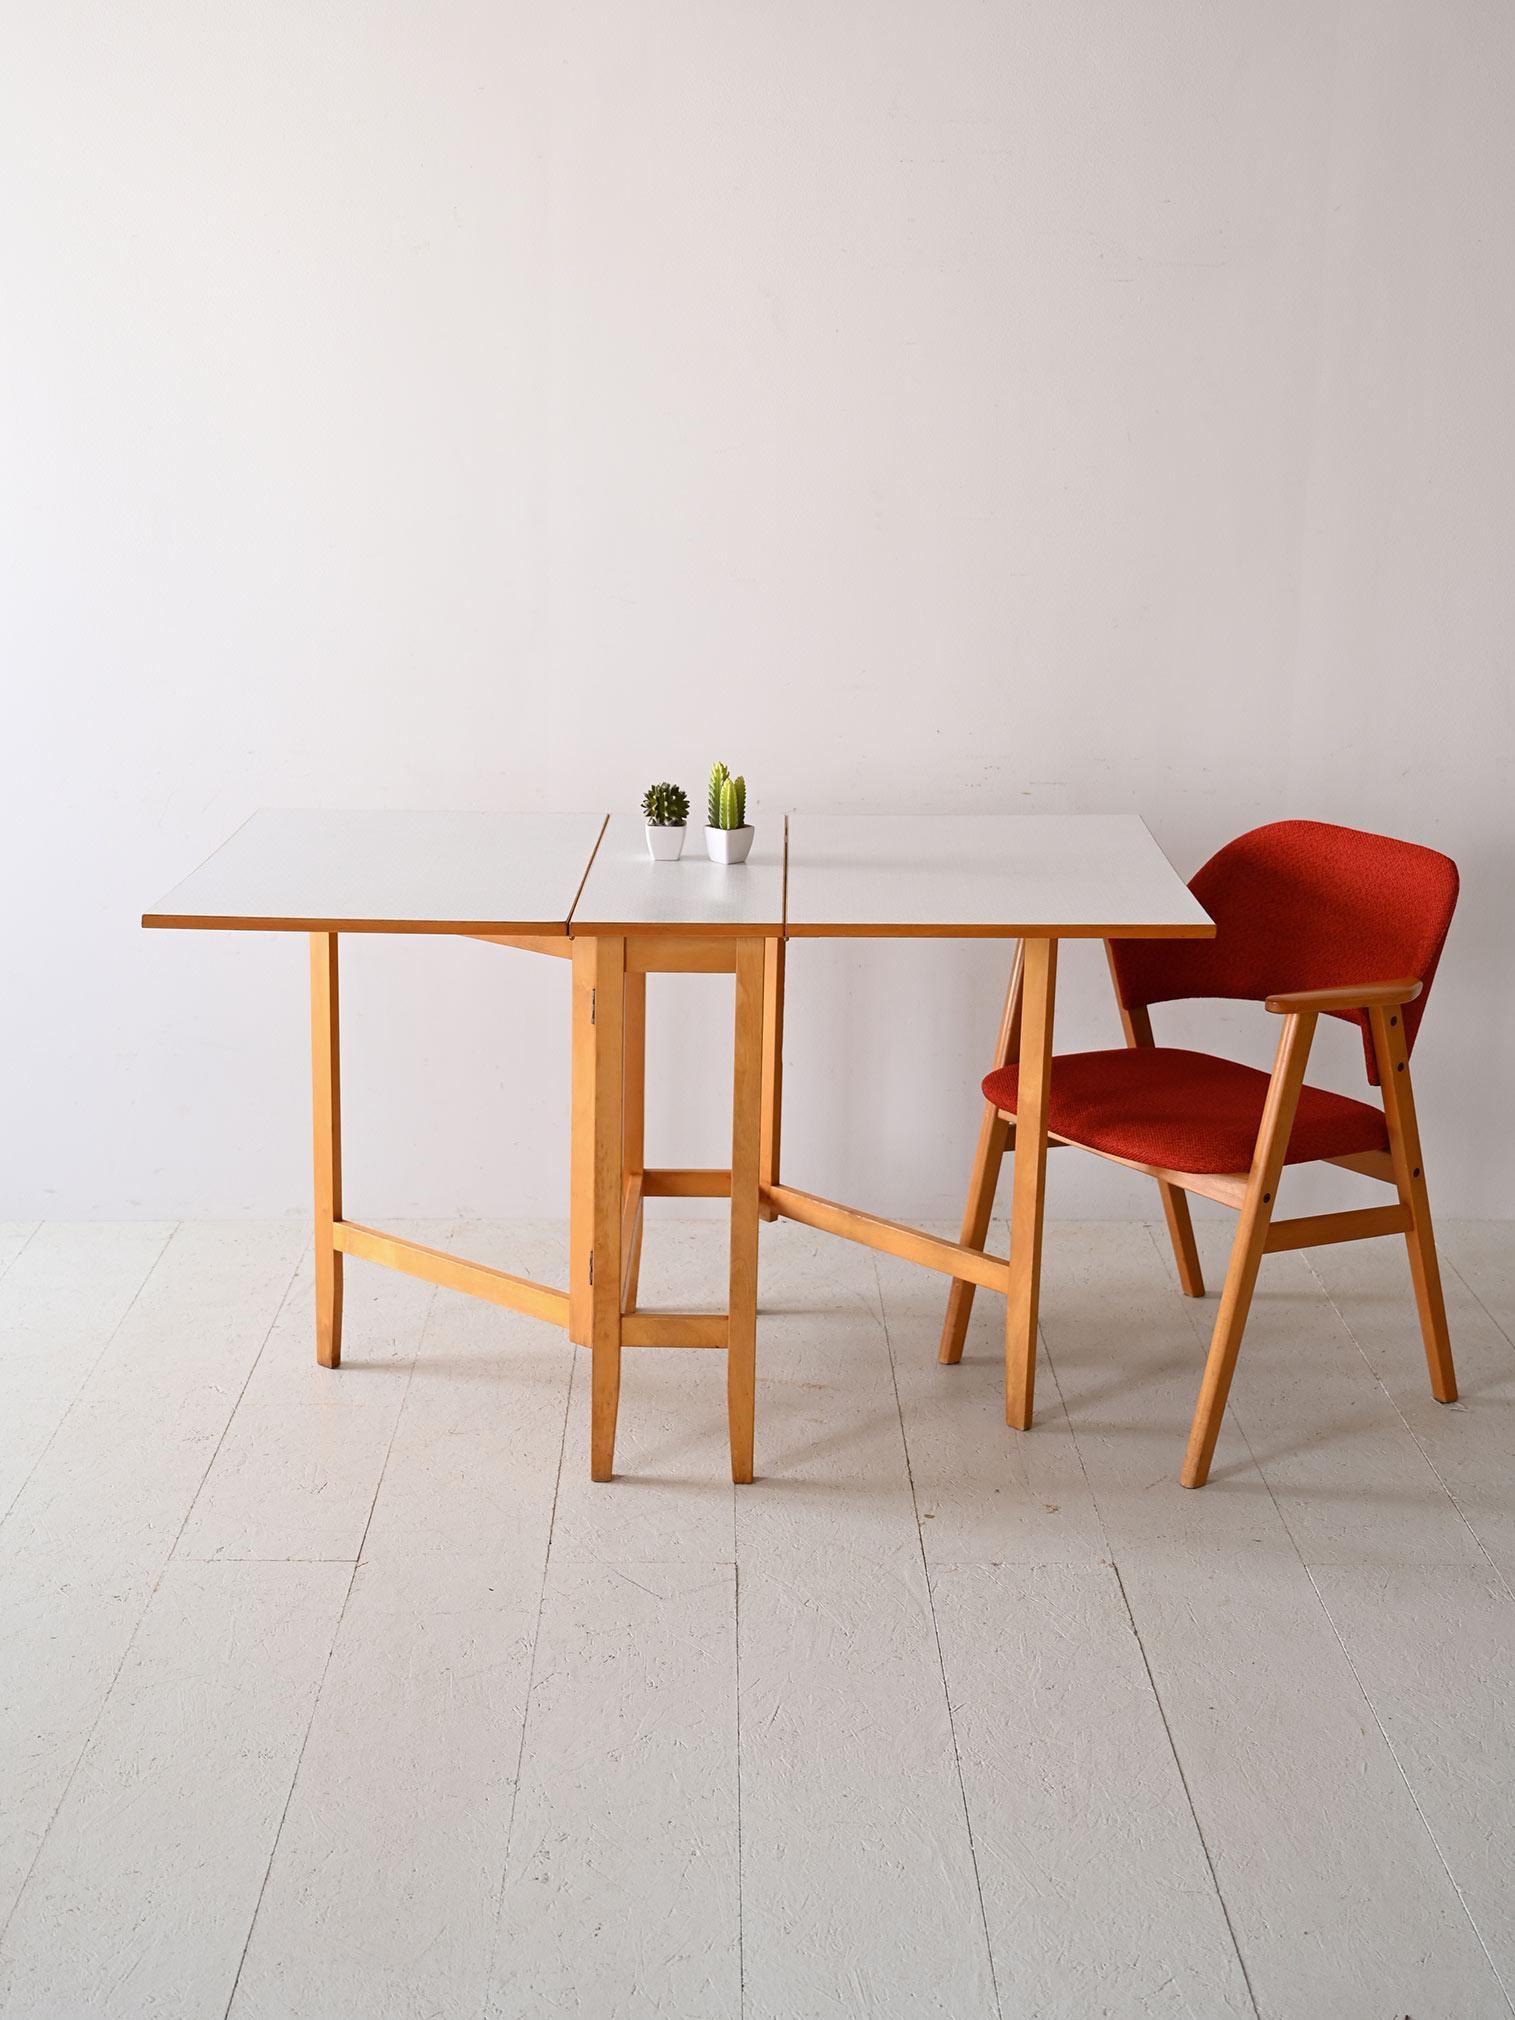 Dieser skandinavische Ausziehtisch mit seiner robusten Formica-Platte und den Teakholzkanten ist ein perfektes Beispiel für funktionales Design. Der Tisch ist für flexible Räume konzipiert und kann erweitert werden, um zusätzliche Gäste zu